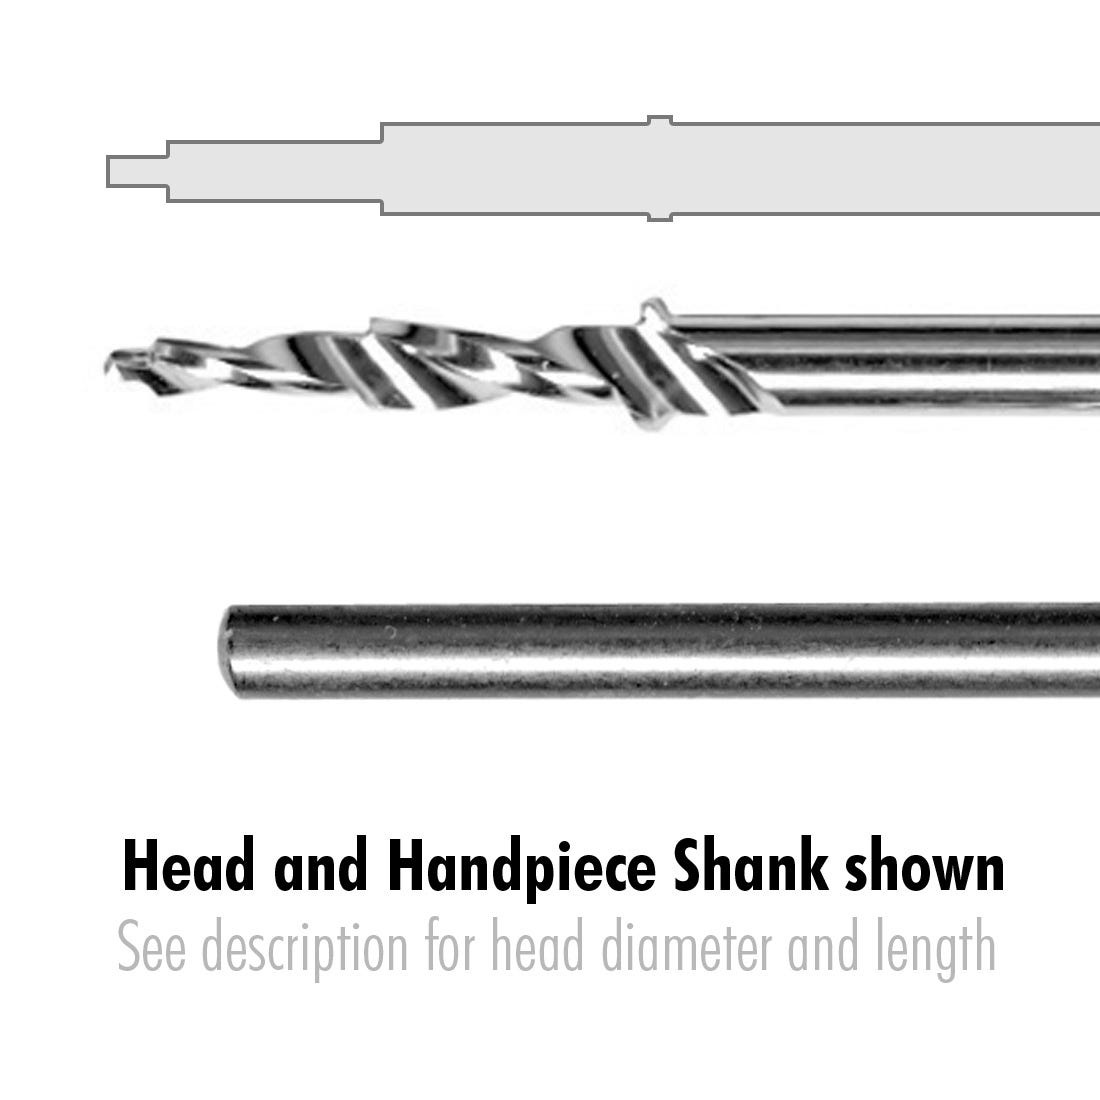 Three Step Pilot Drill 48mm long, step diameters (.8mm, 1.6mm, 2.1mm) handpiece